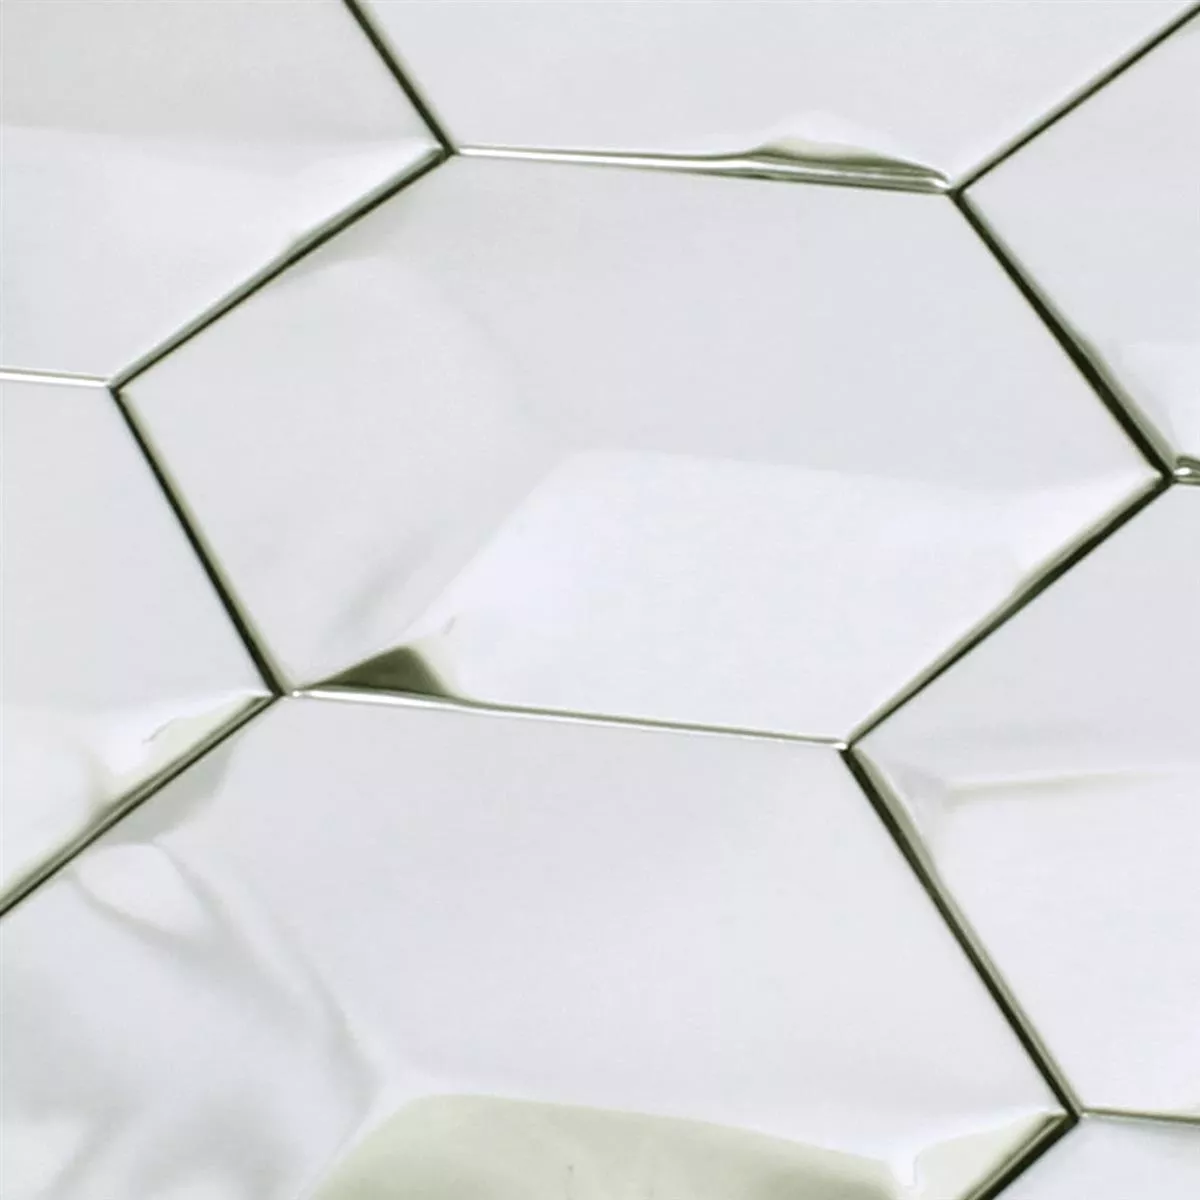 Mosaic Tiles Stainless Steel Contender Hexagon Mat